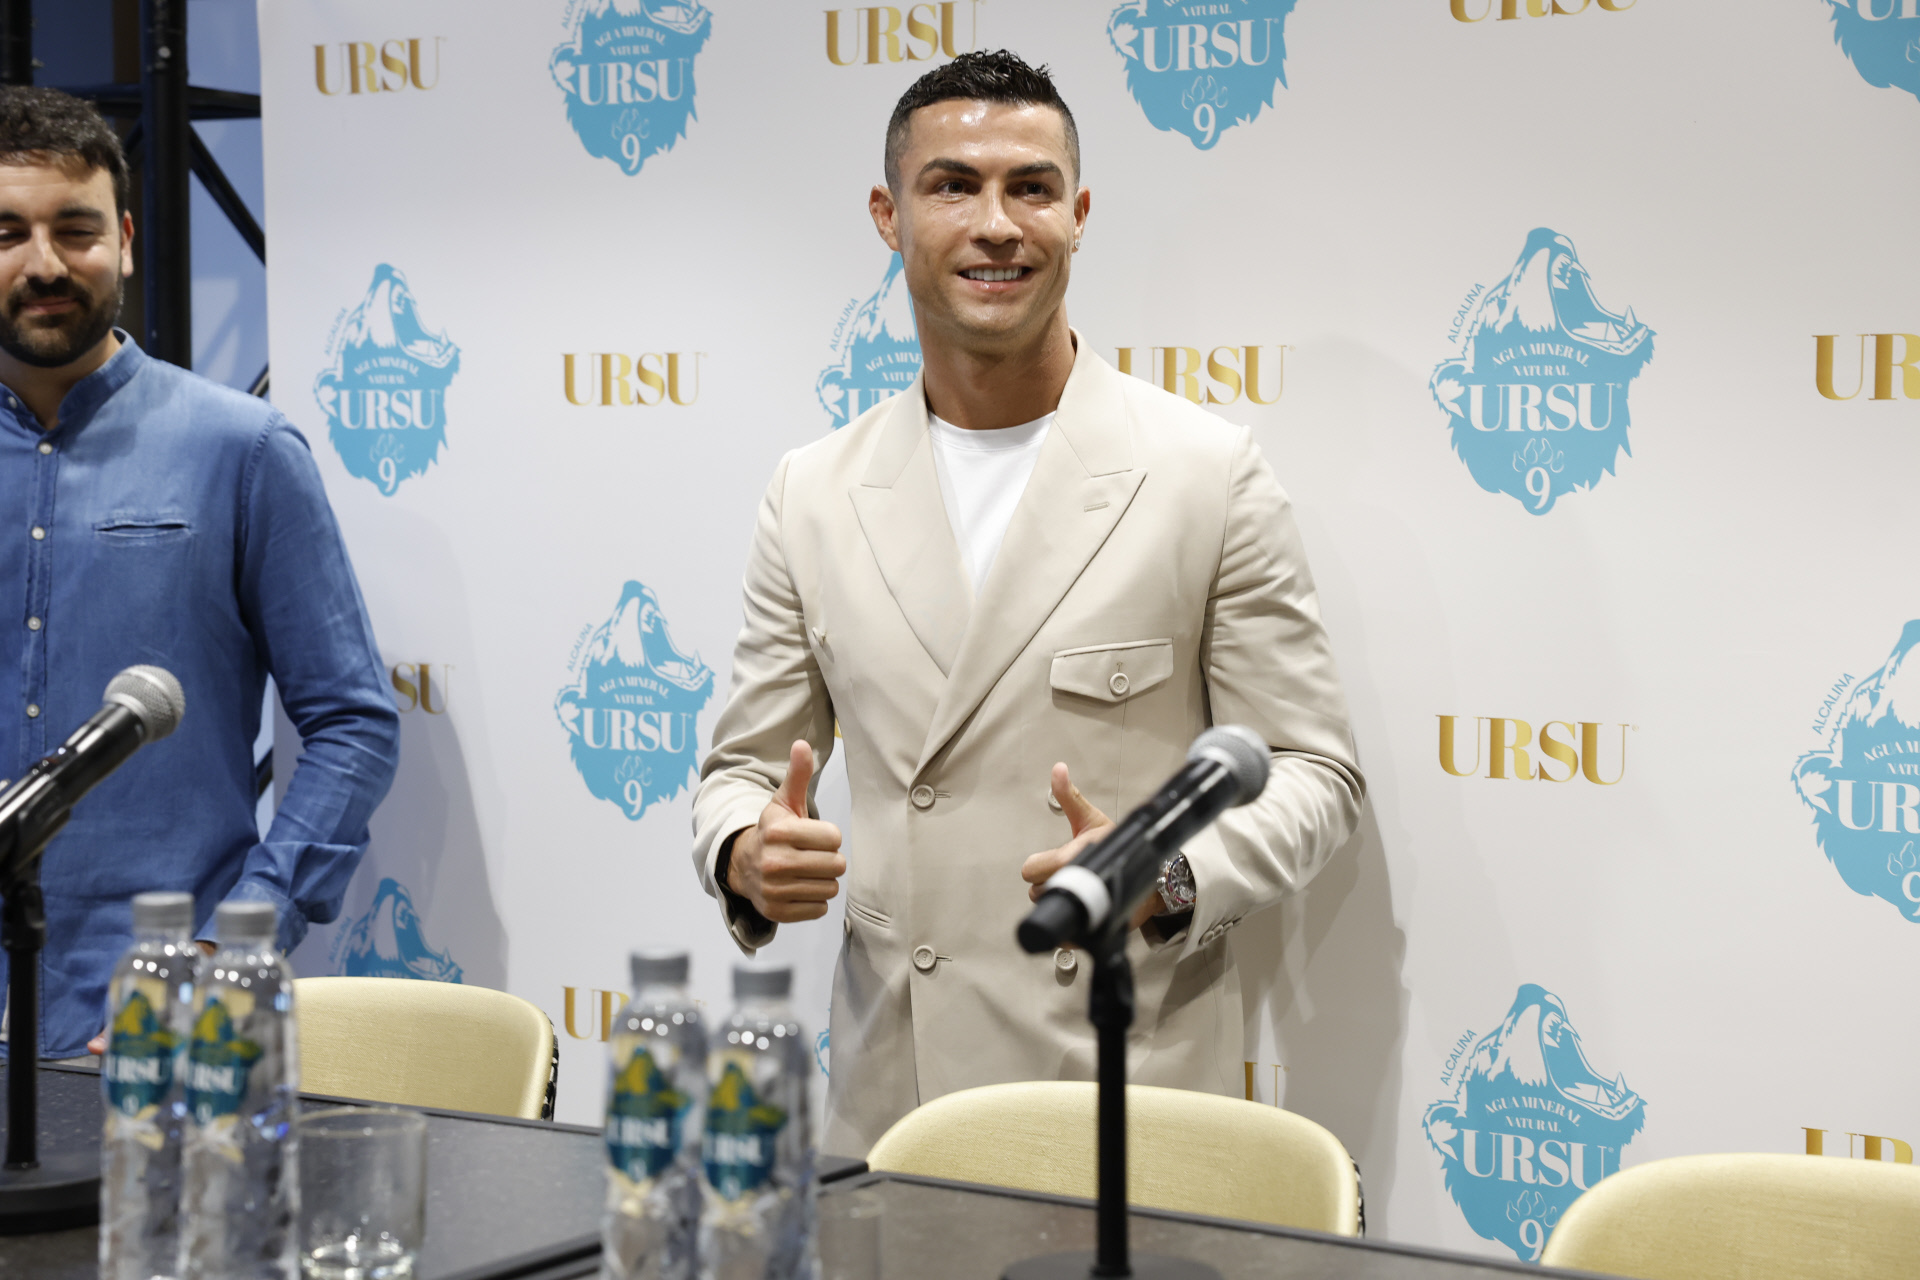 Cristiano Ronaldo recuerda la anécdota de la Coca-Cola y lanza su agua  alcalina: "A una edad me permito pocos errores para rendir en mi profesión"  | Bienestar